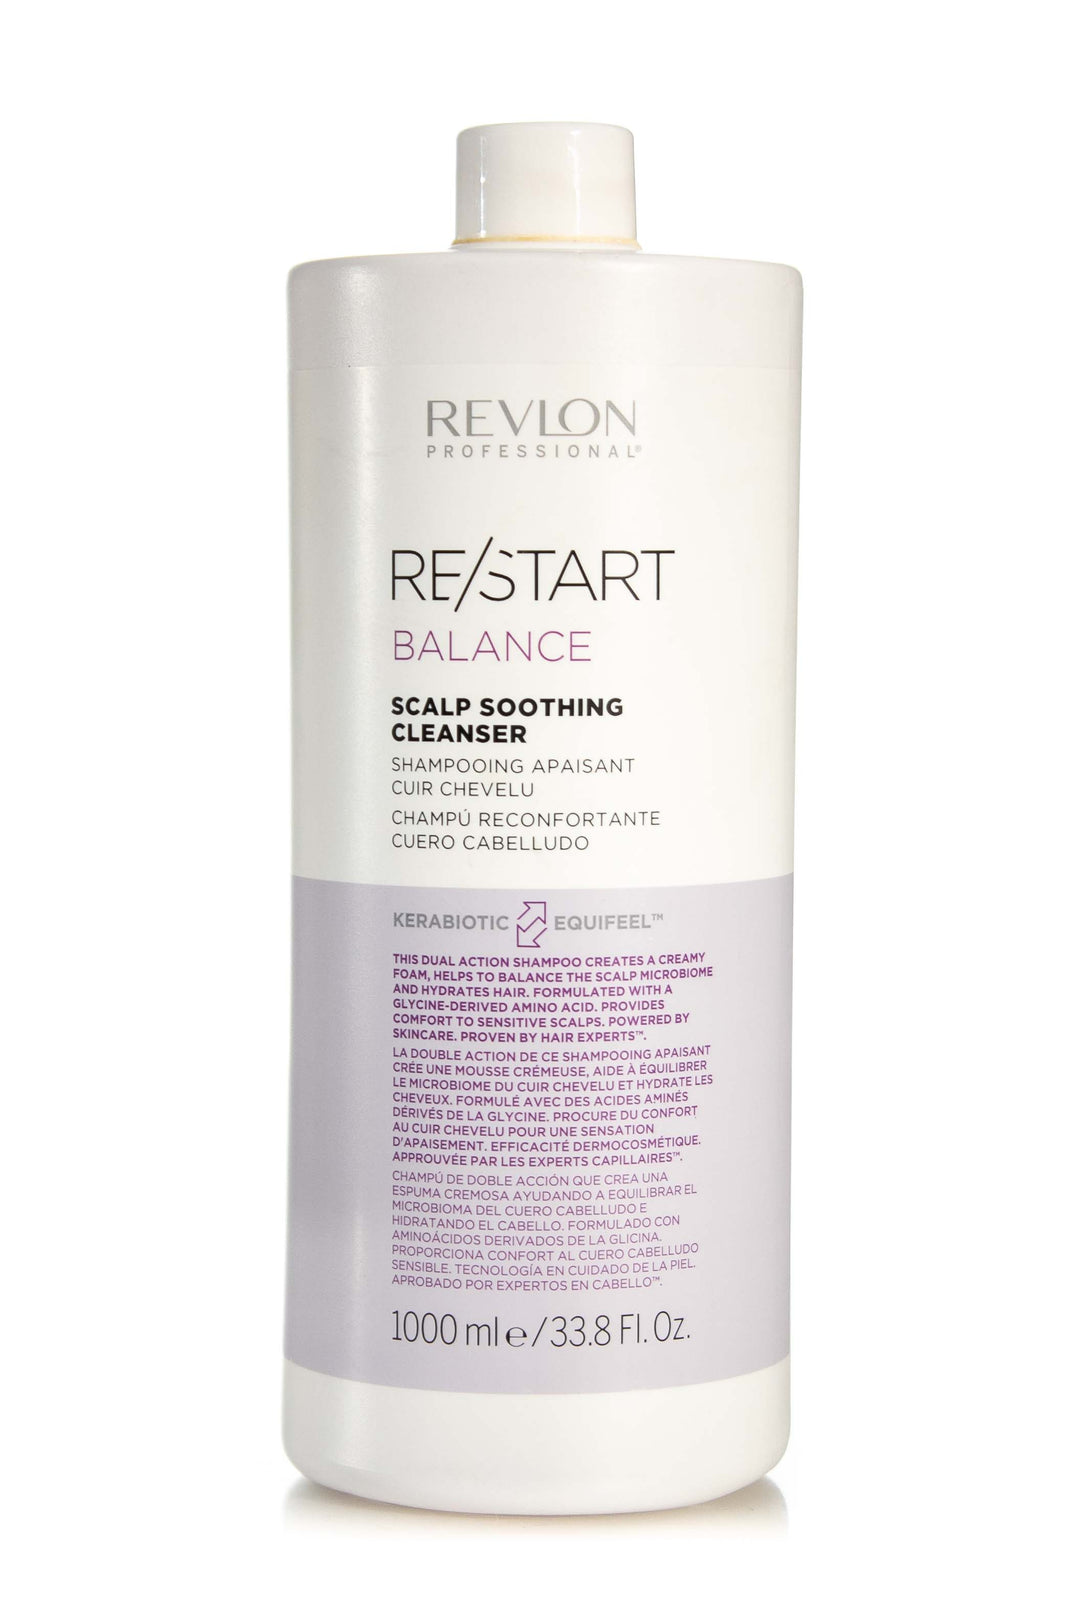 REVLON RESTART Balance Scalp Cleanser – Sizes Hair Salon Soothing Various Care 